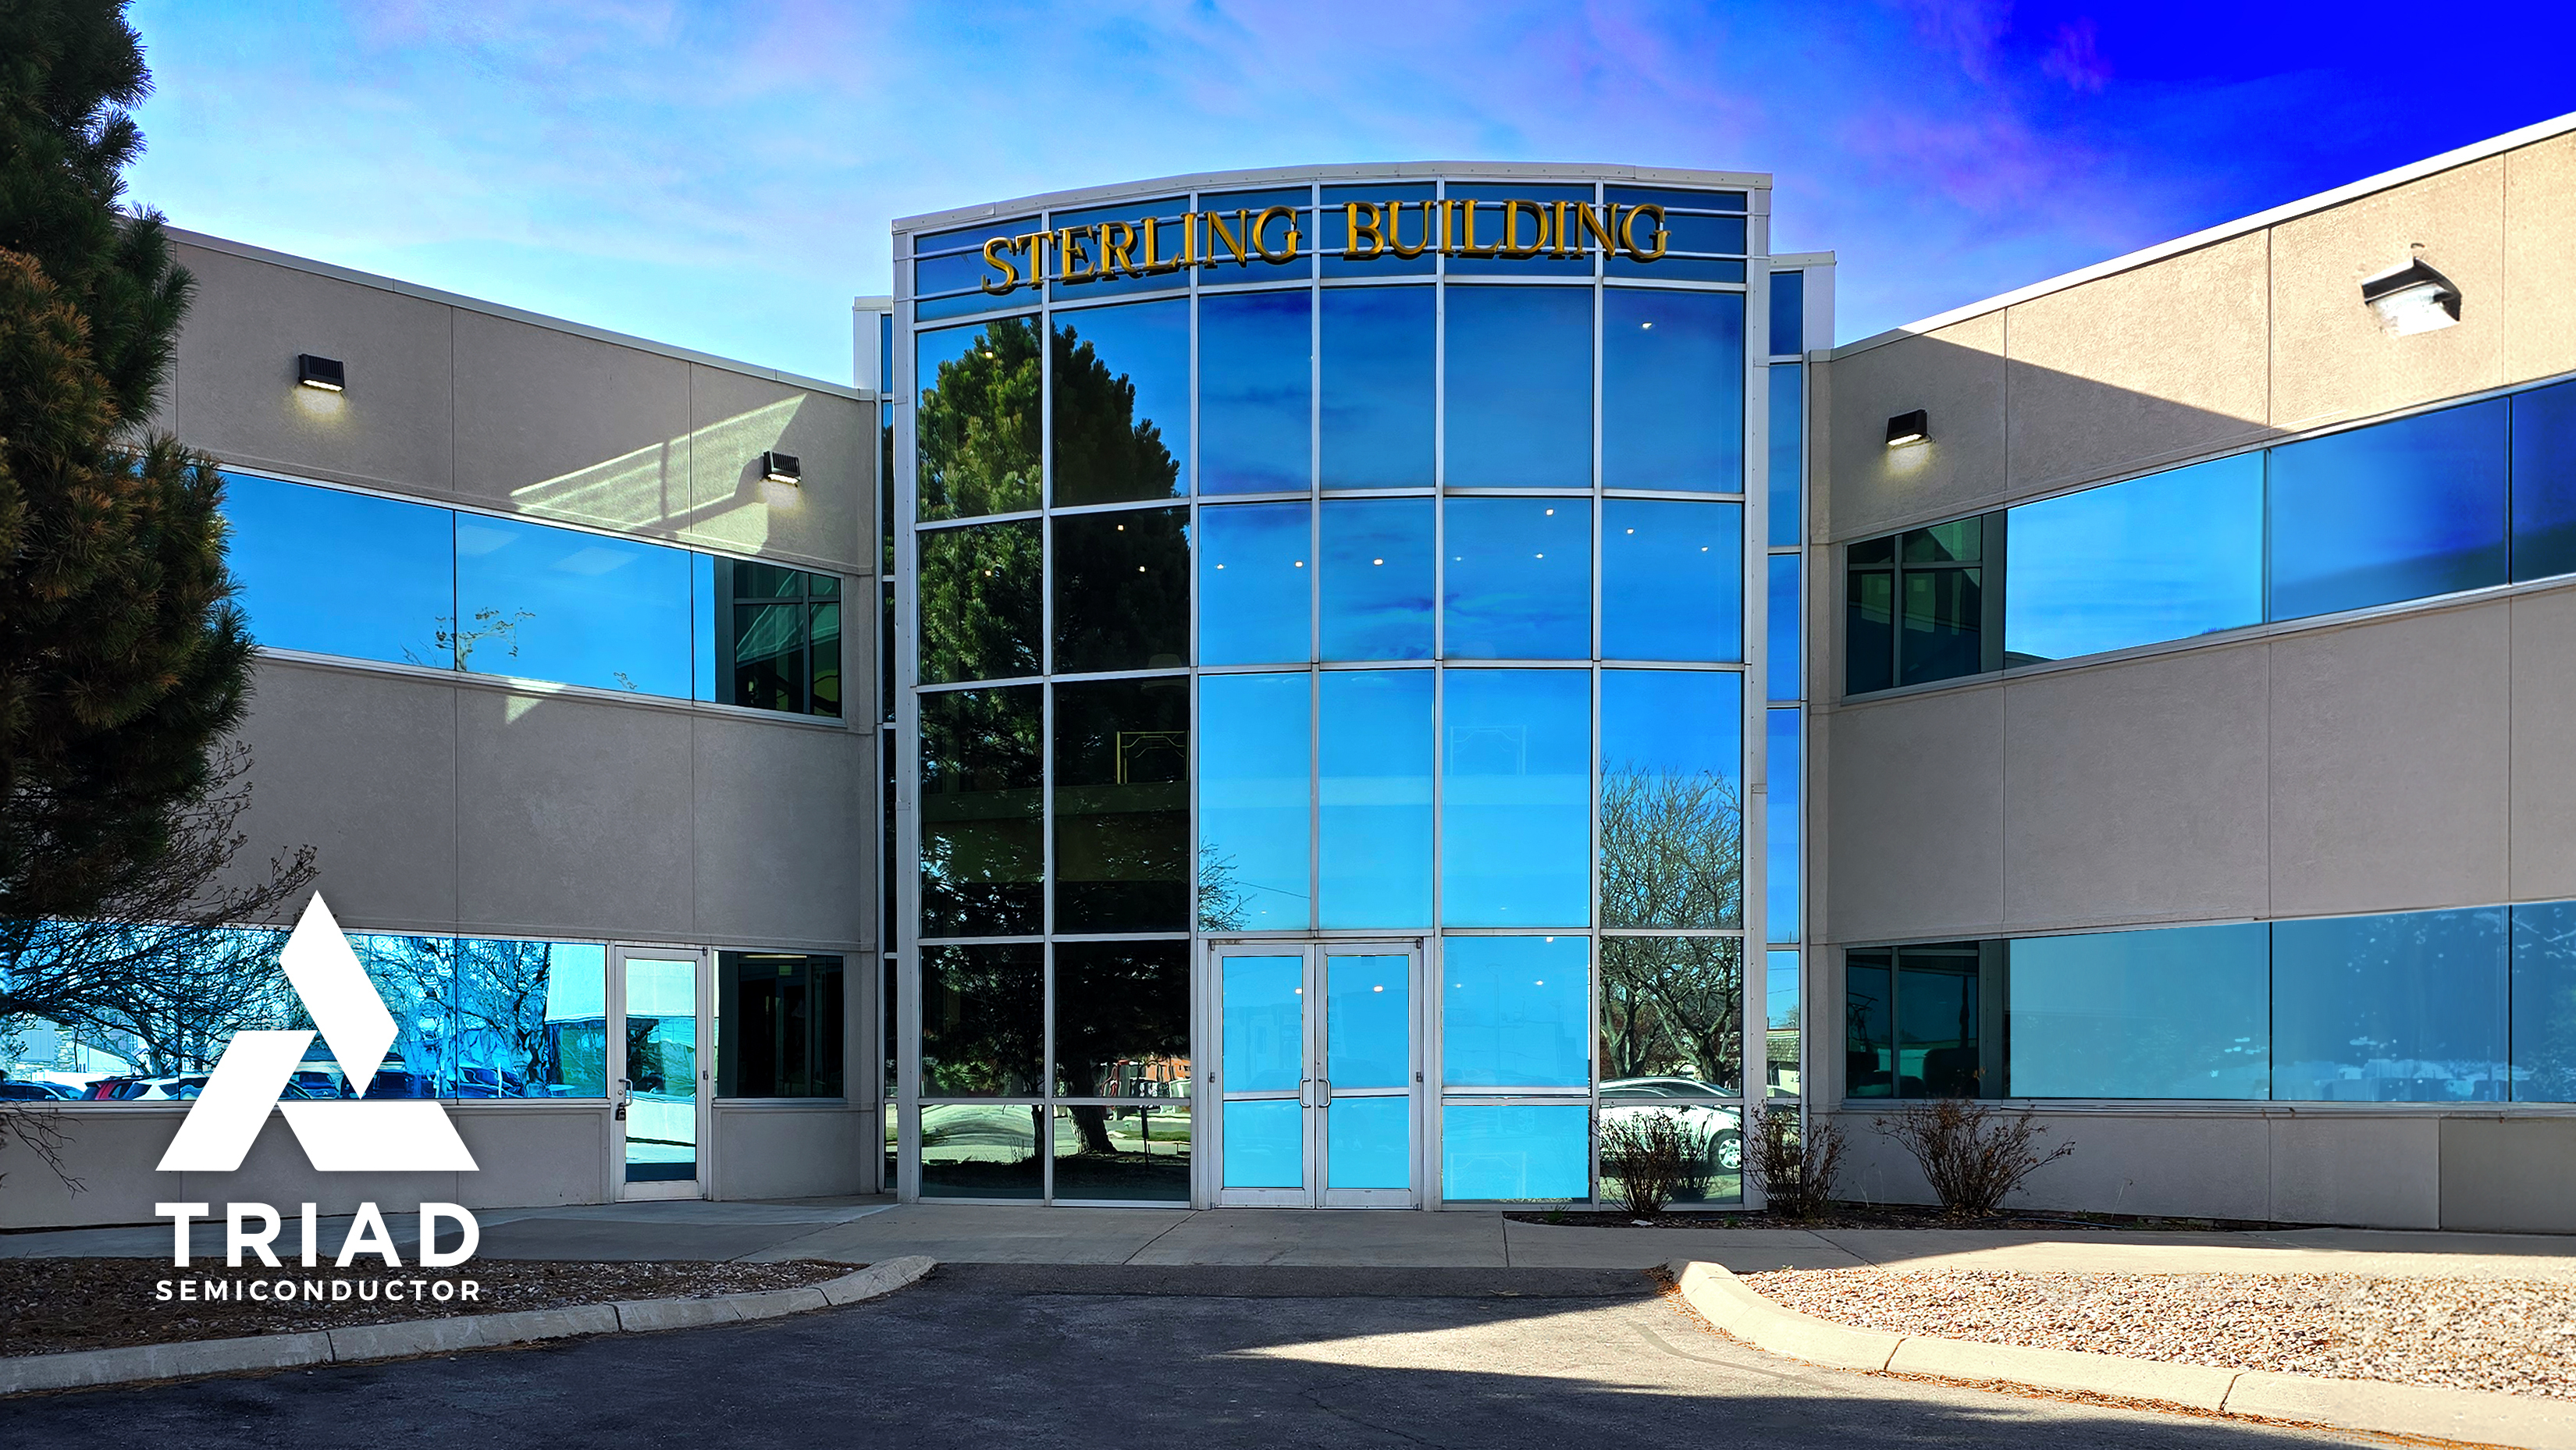 Triad Semiconductor Launches Advanced Design Center in Pocatello, Idaho